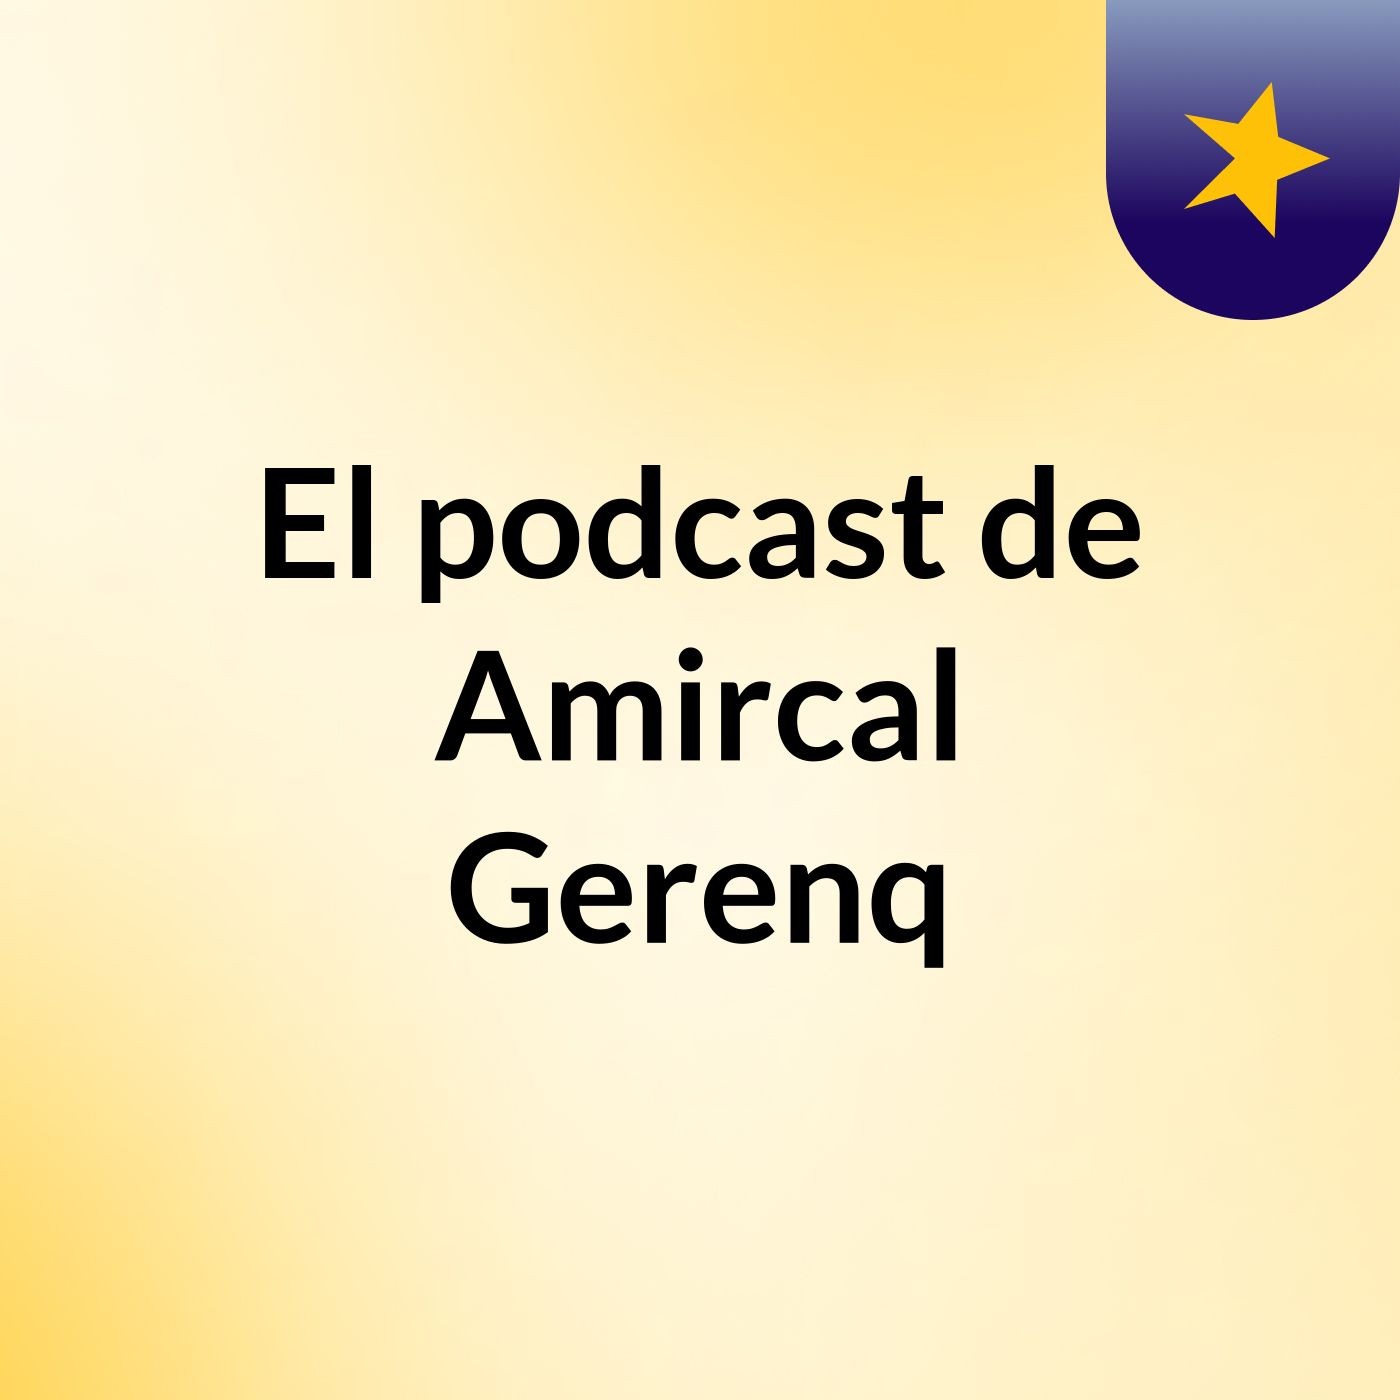 El podcast de Amircal Gerenq